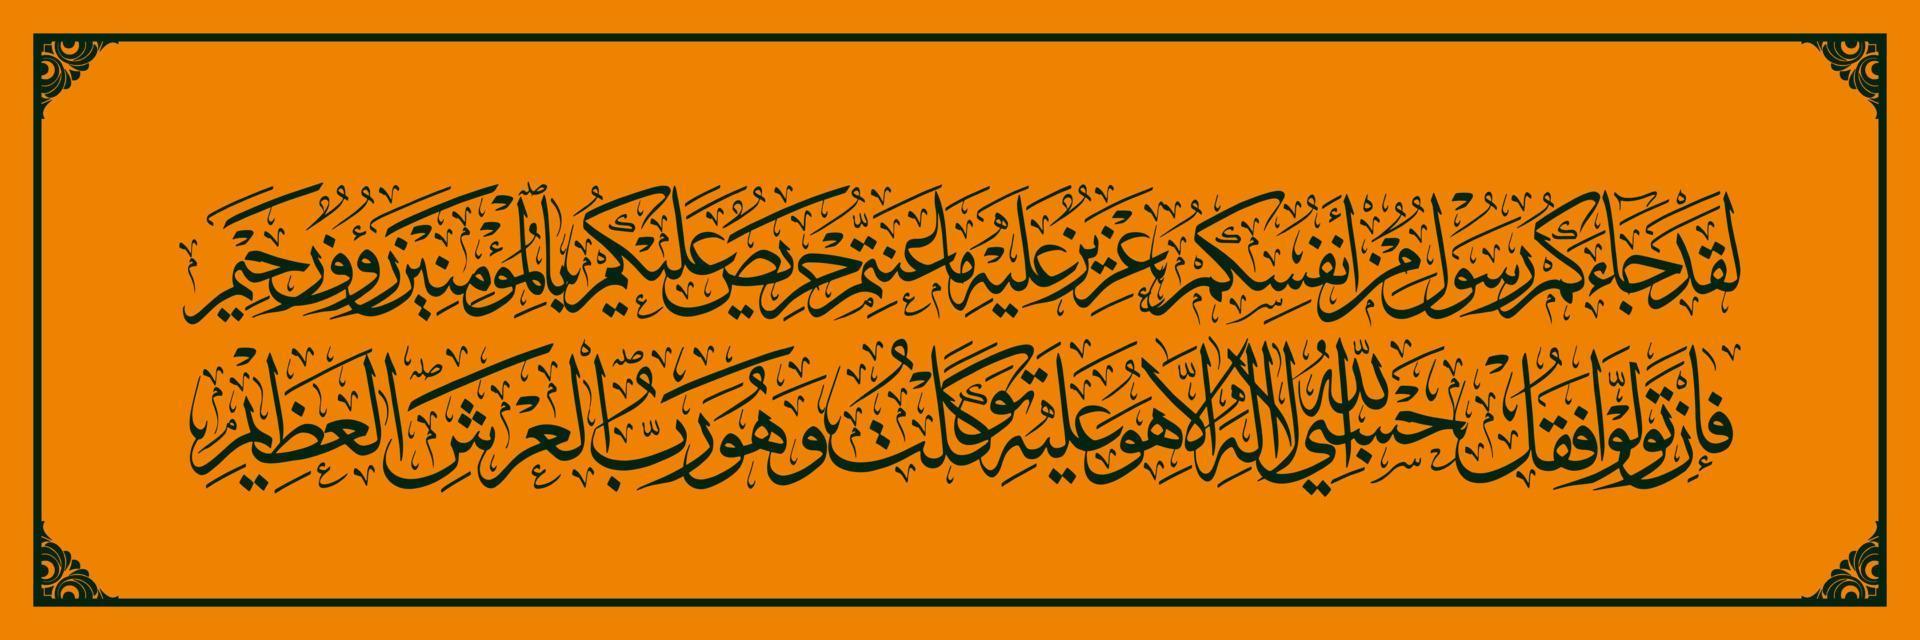 caligrafía árabe, corán sura en taubah versos 128 129, traducción dverdaderamente, un mensajero ha venido a ti de tu propia gente vector